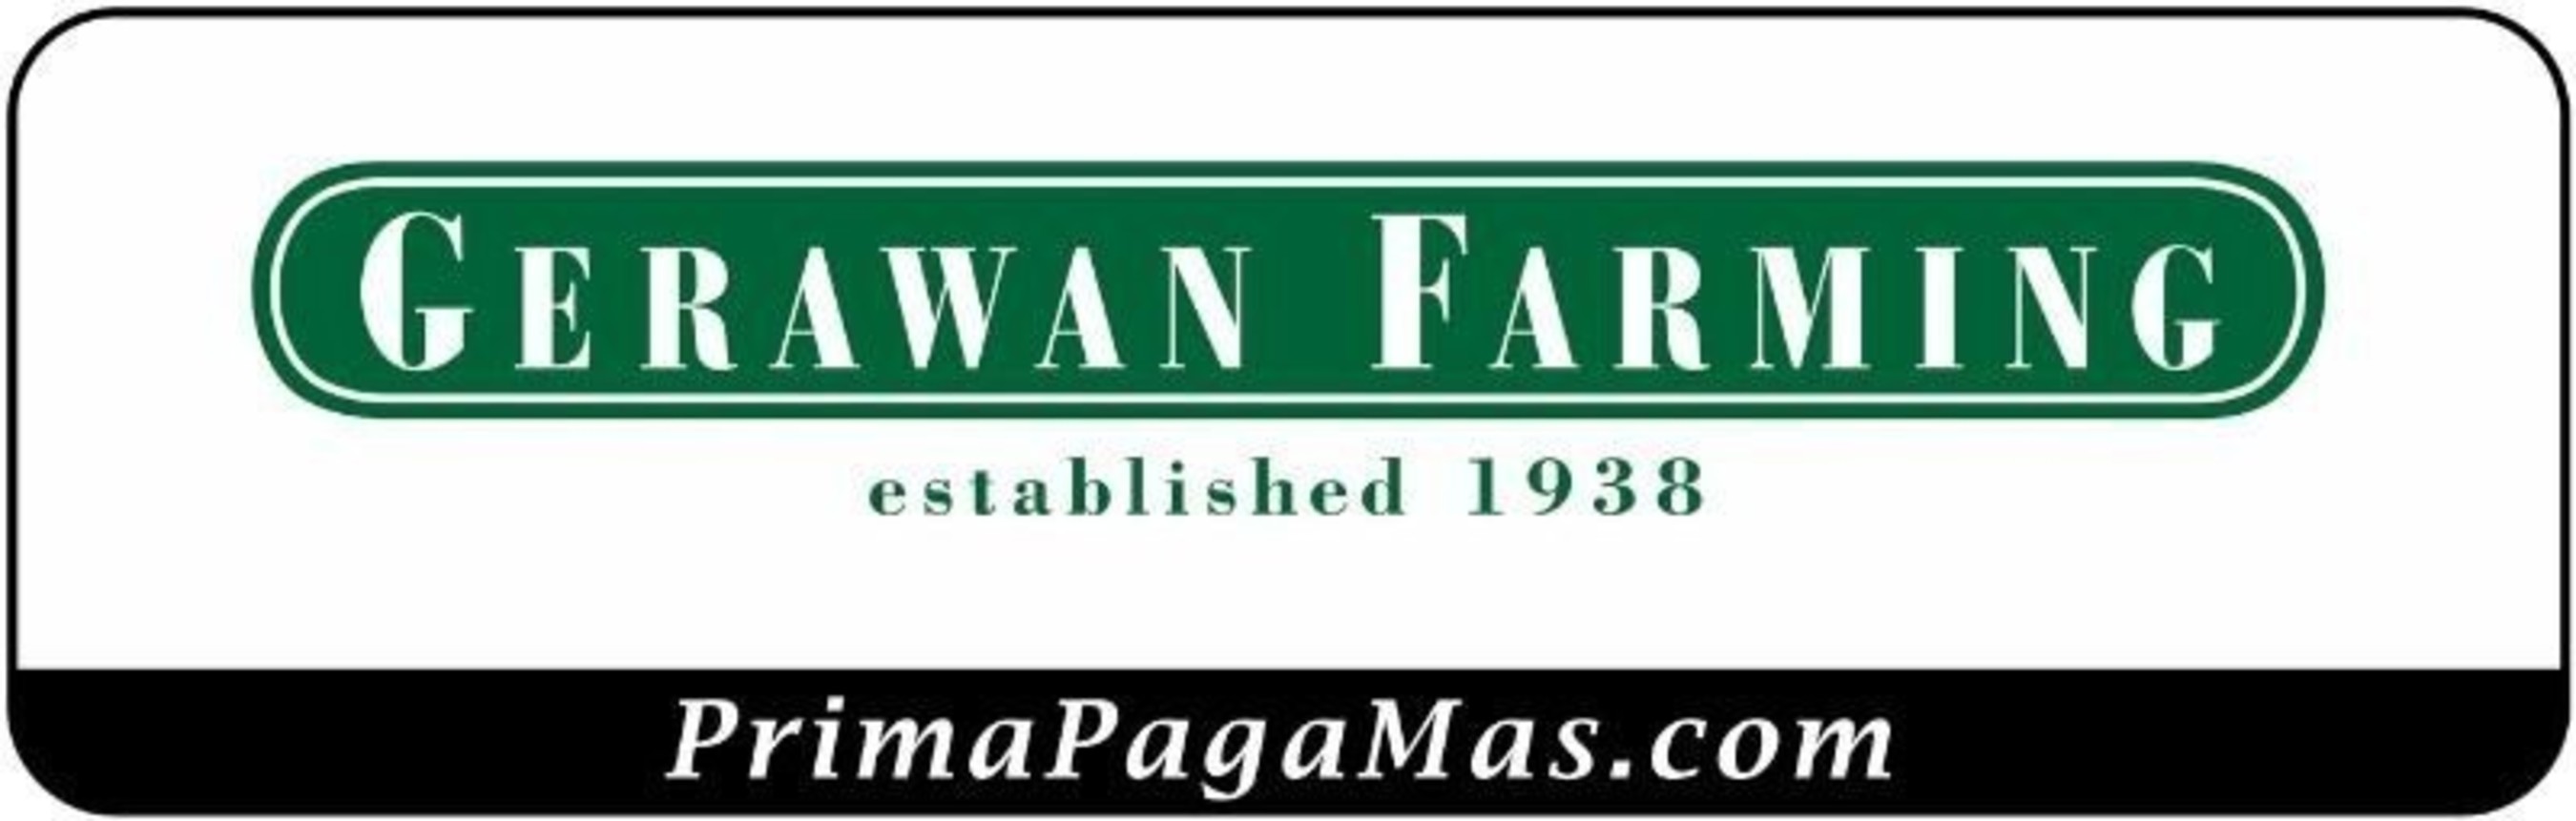 Gerawan Farming Logo (PRNewsFoto/Gerawan Farming)